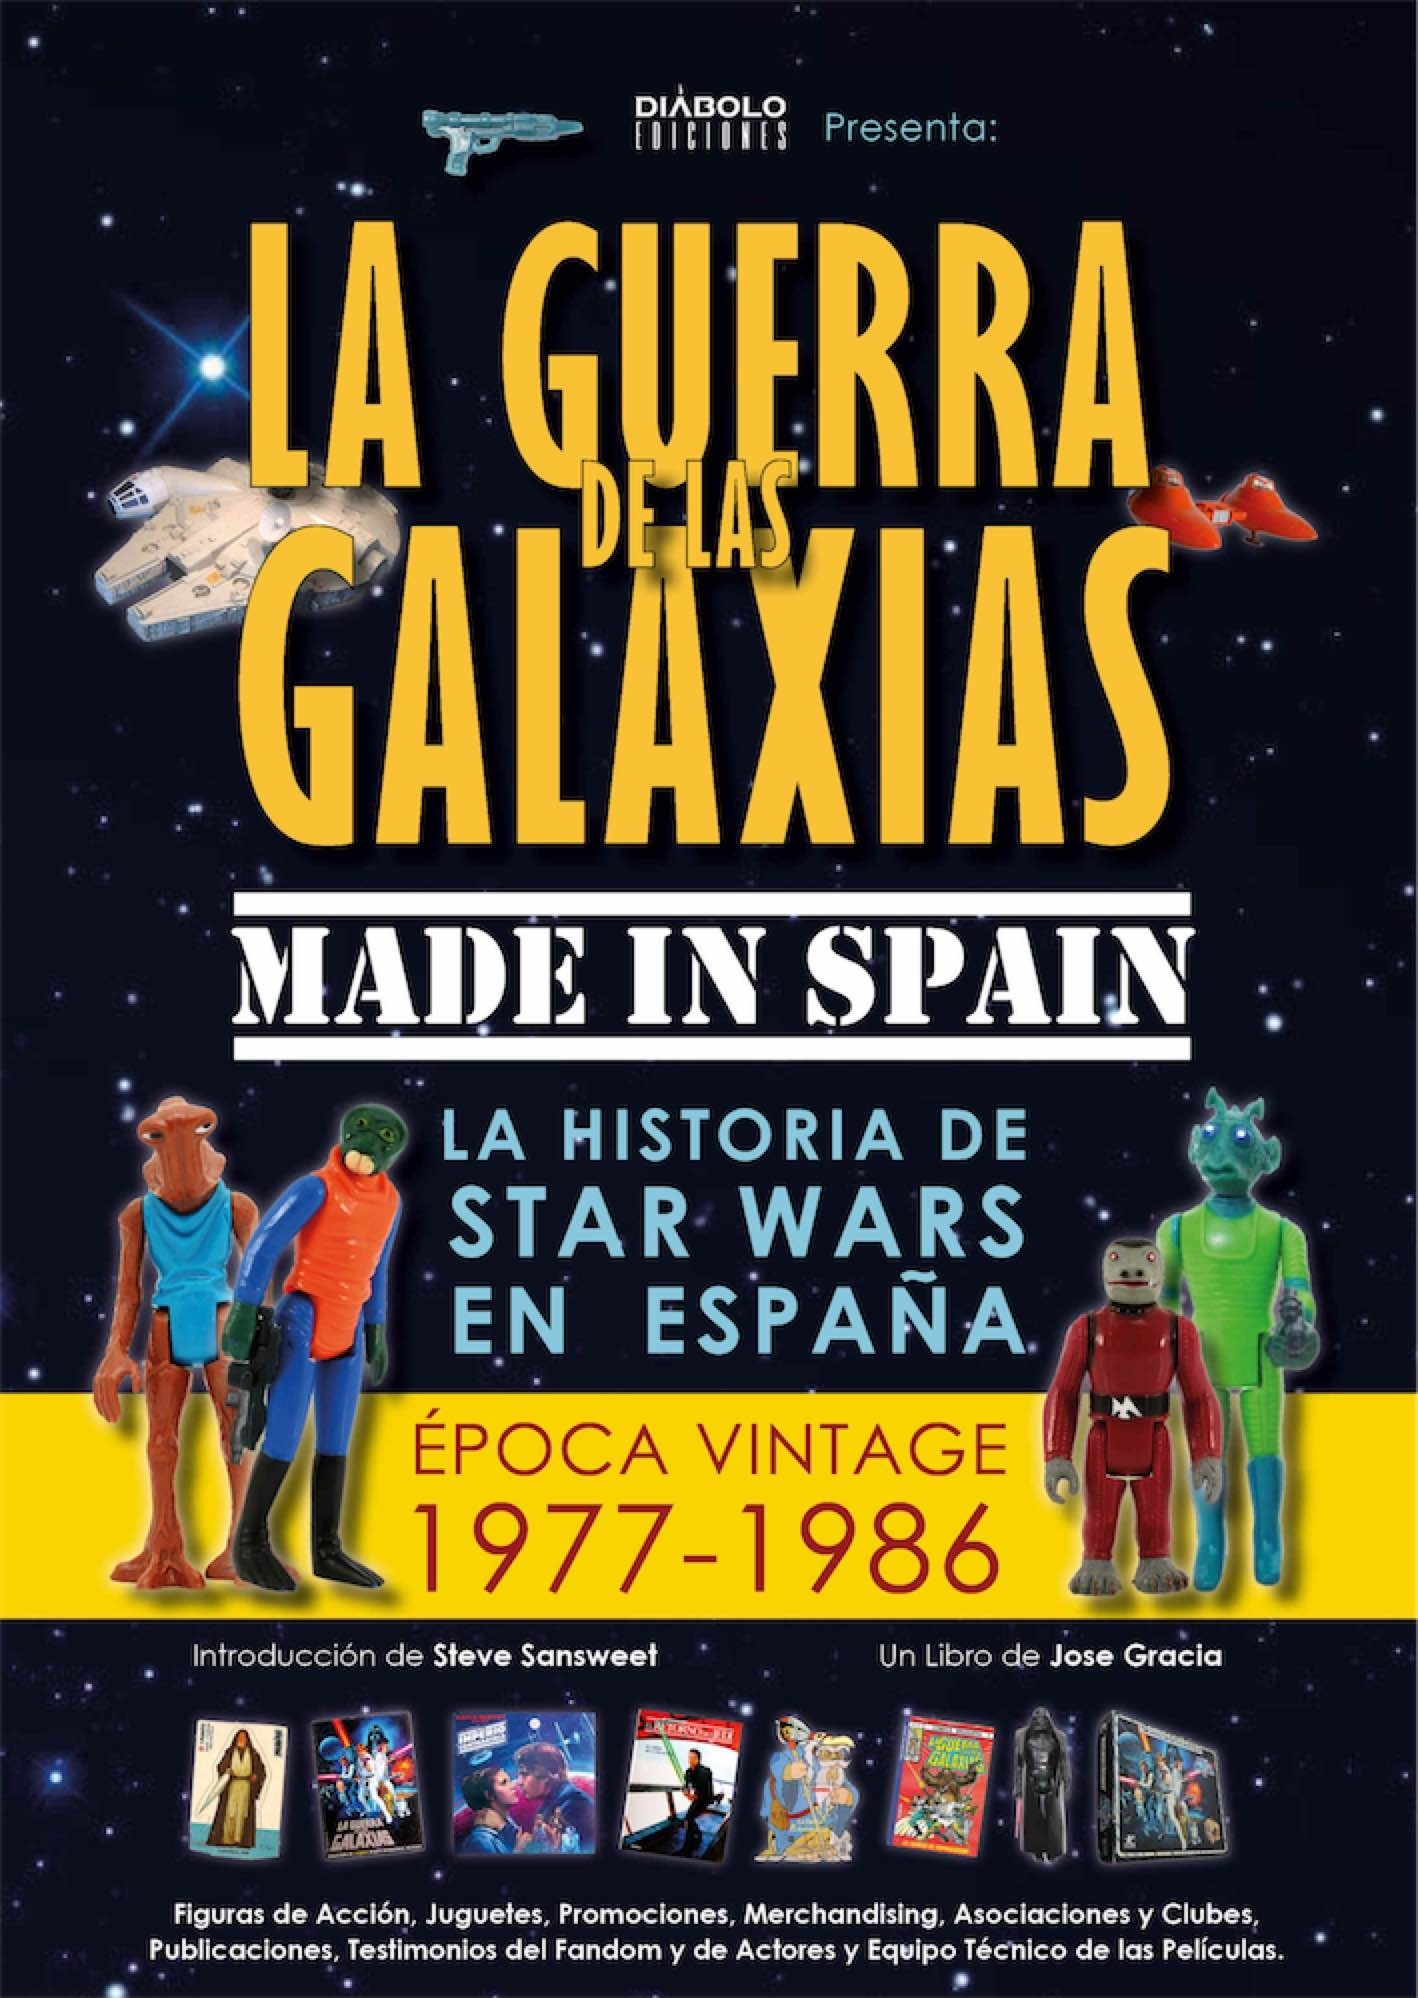 Guerra de las galaxias Made in Spain, La "La historia de Star Wars en España (Época Vintage, 1977-1986)". La historia de Star Wars en España (Época Vintage, 1977-1986)